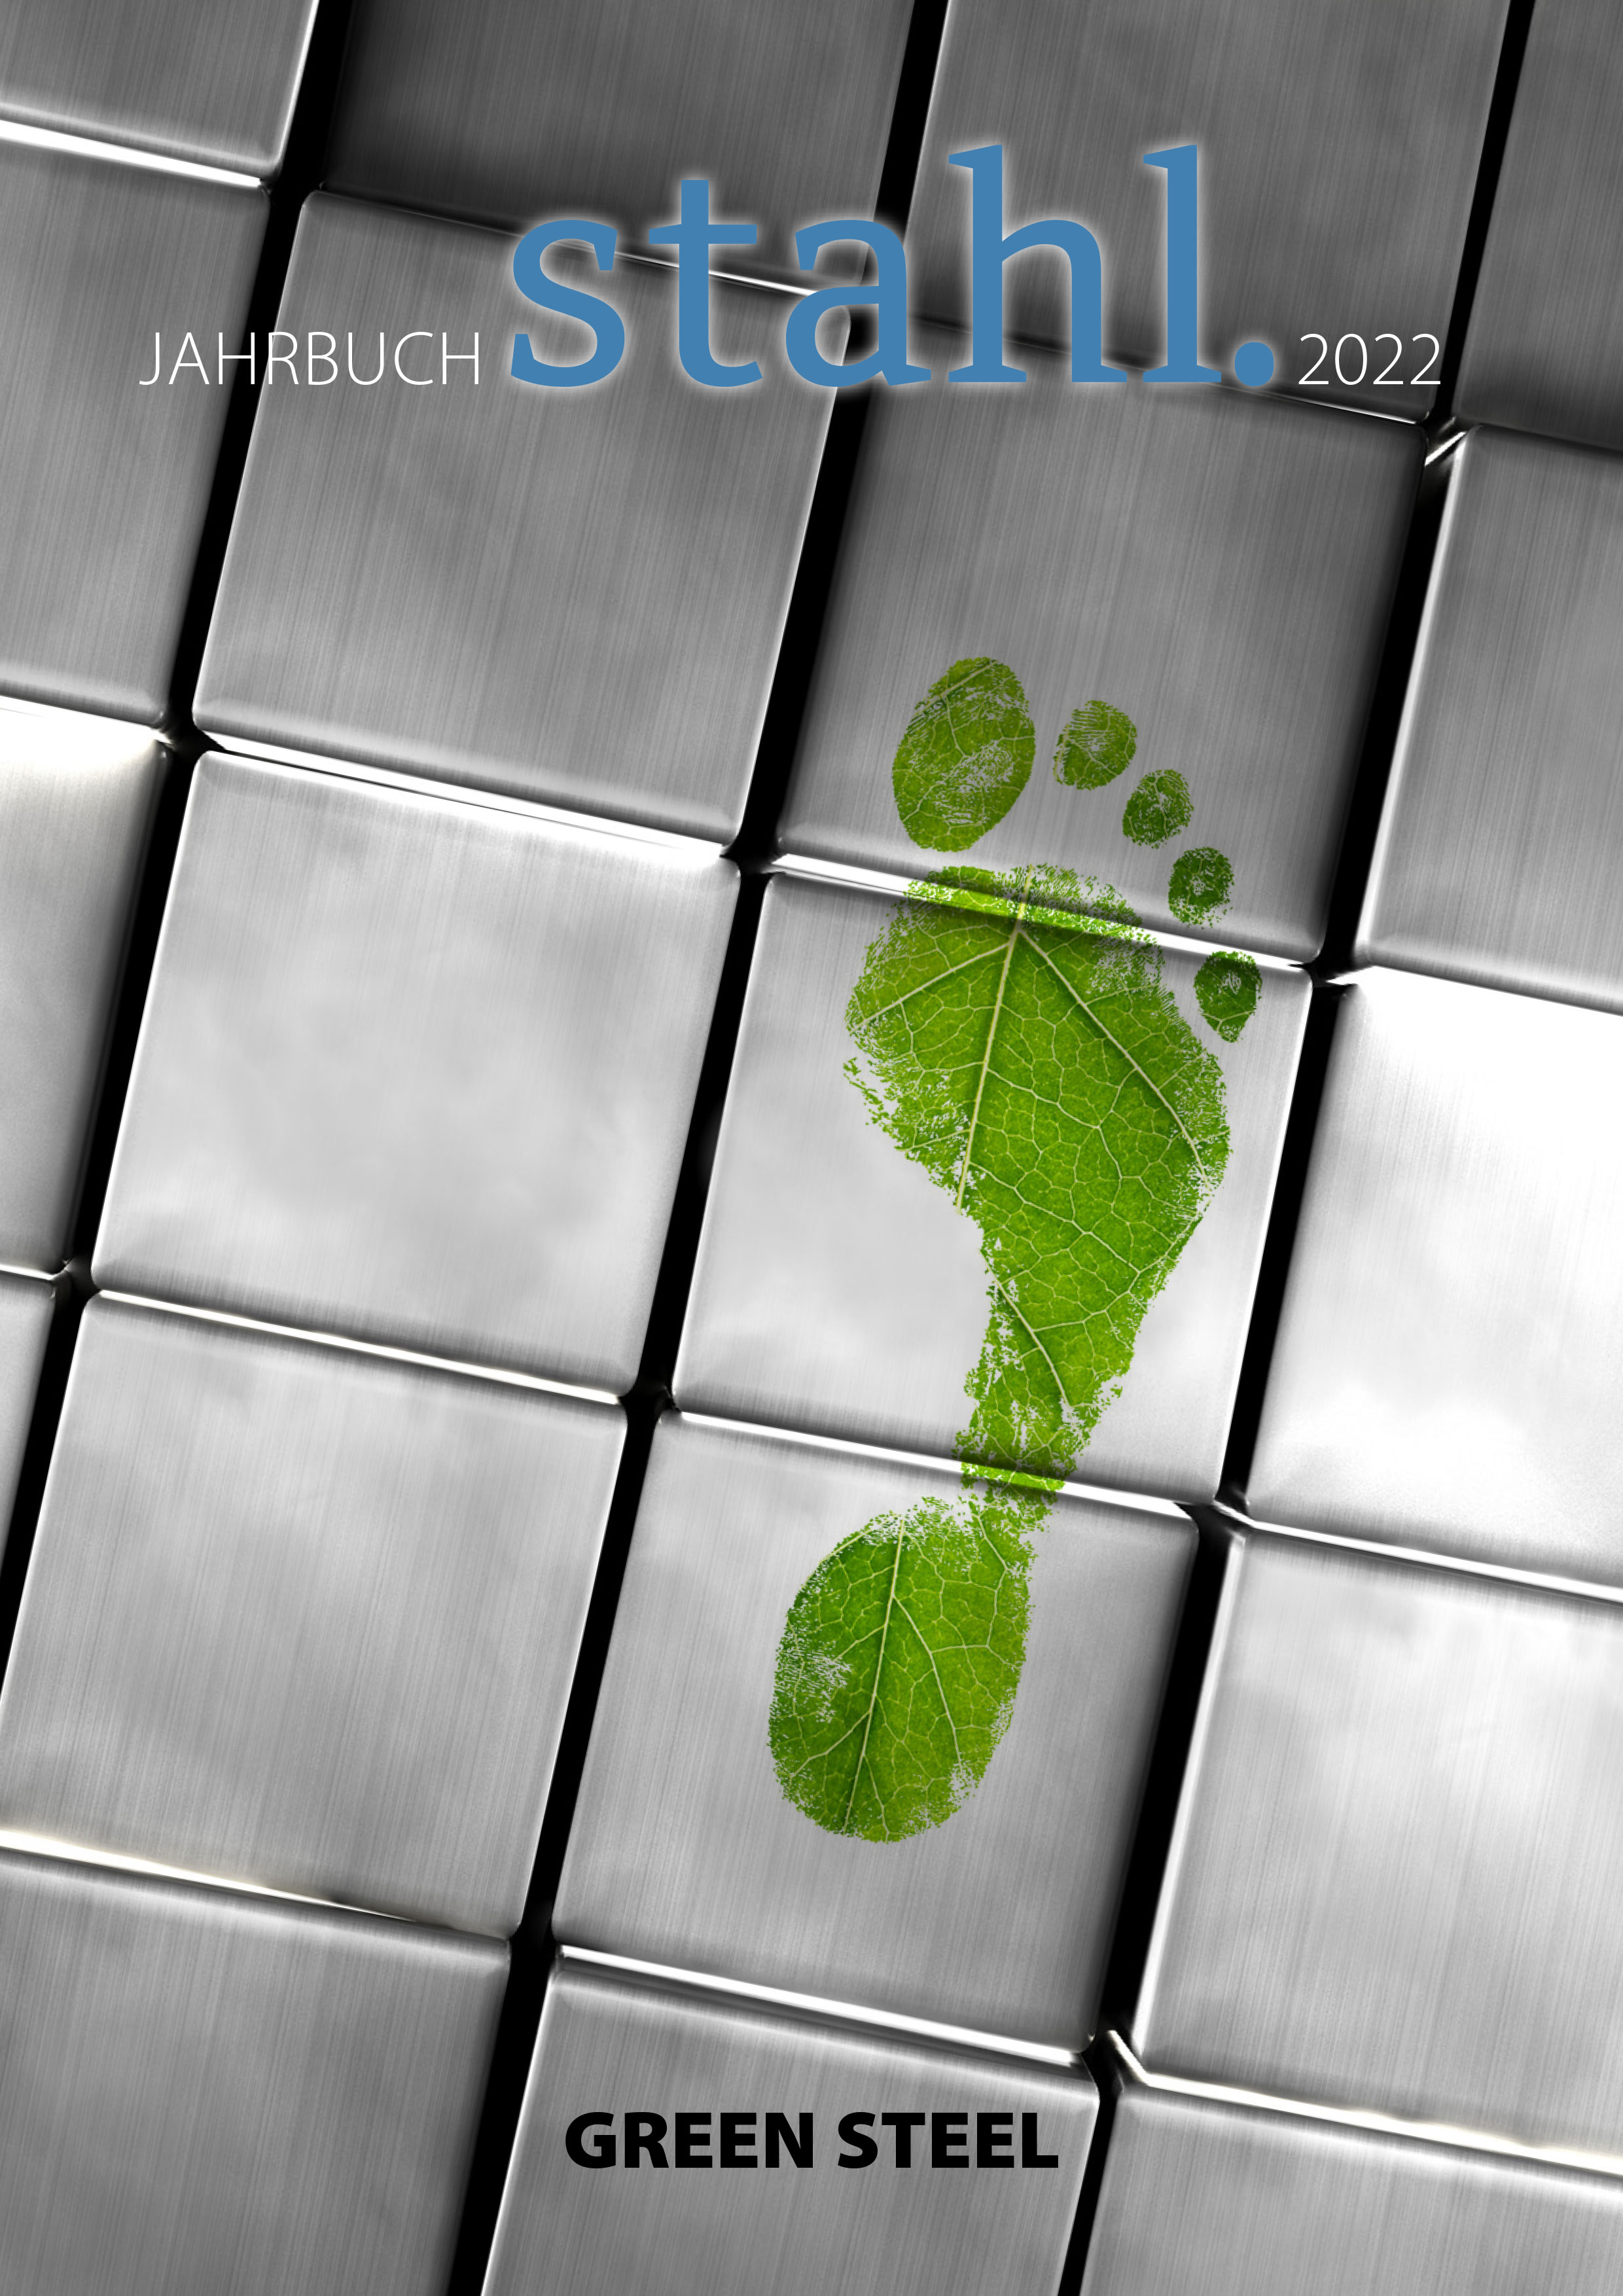 Jahrbuch stahl. 2022 "Green Steel"